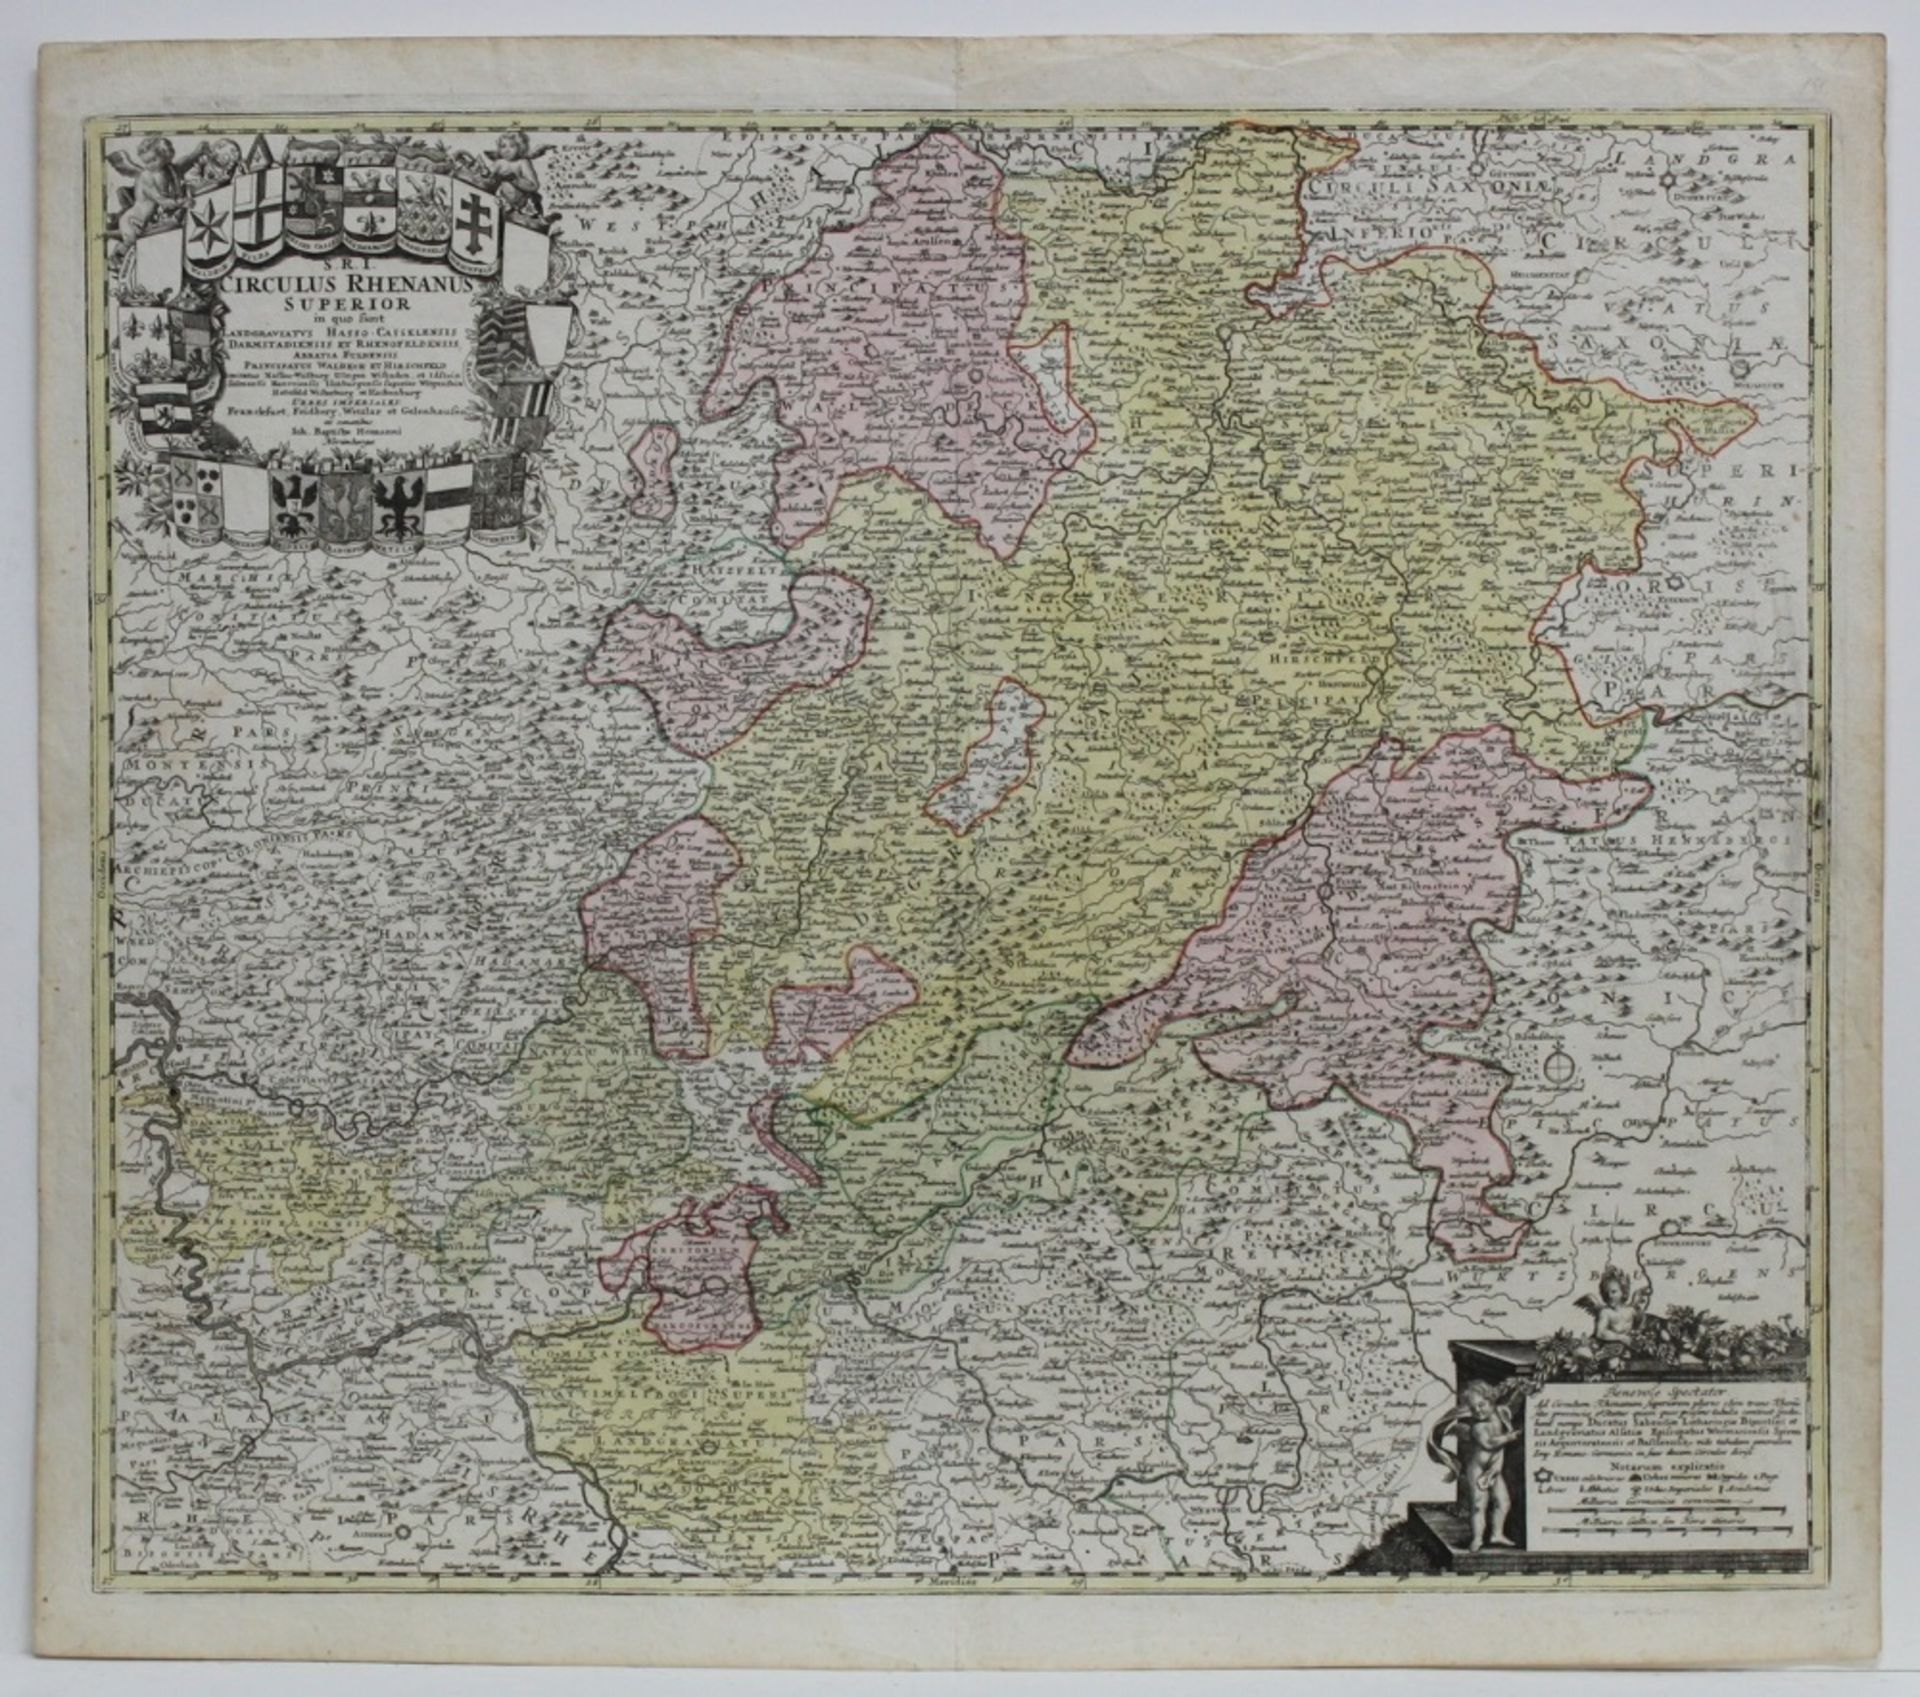 Hessen. Kolorierte Kupferstichkarte von Joh. Bapt. Homann, ca. 1716. Bildgröße 57,5 x 49 cm. (